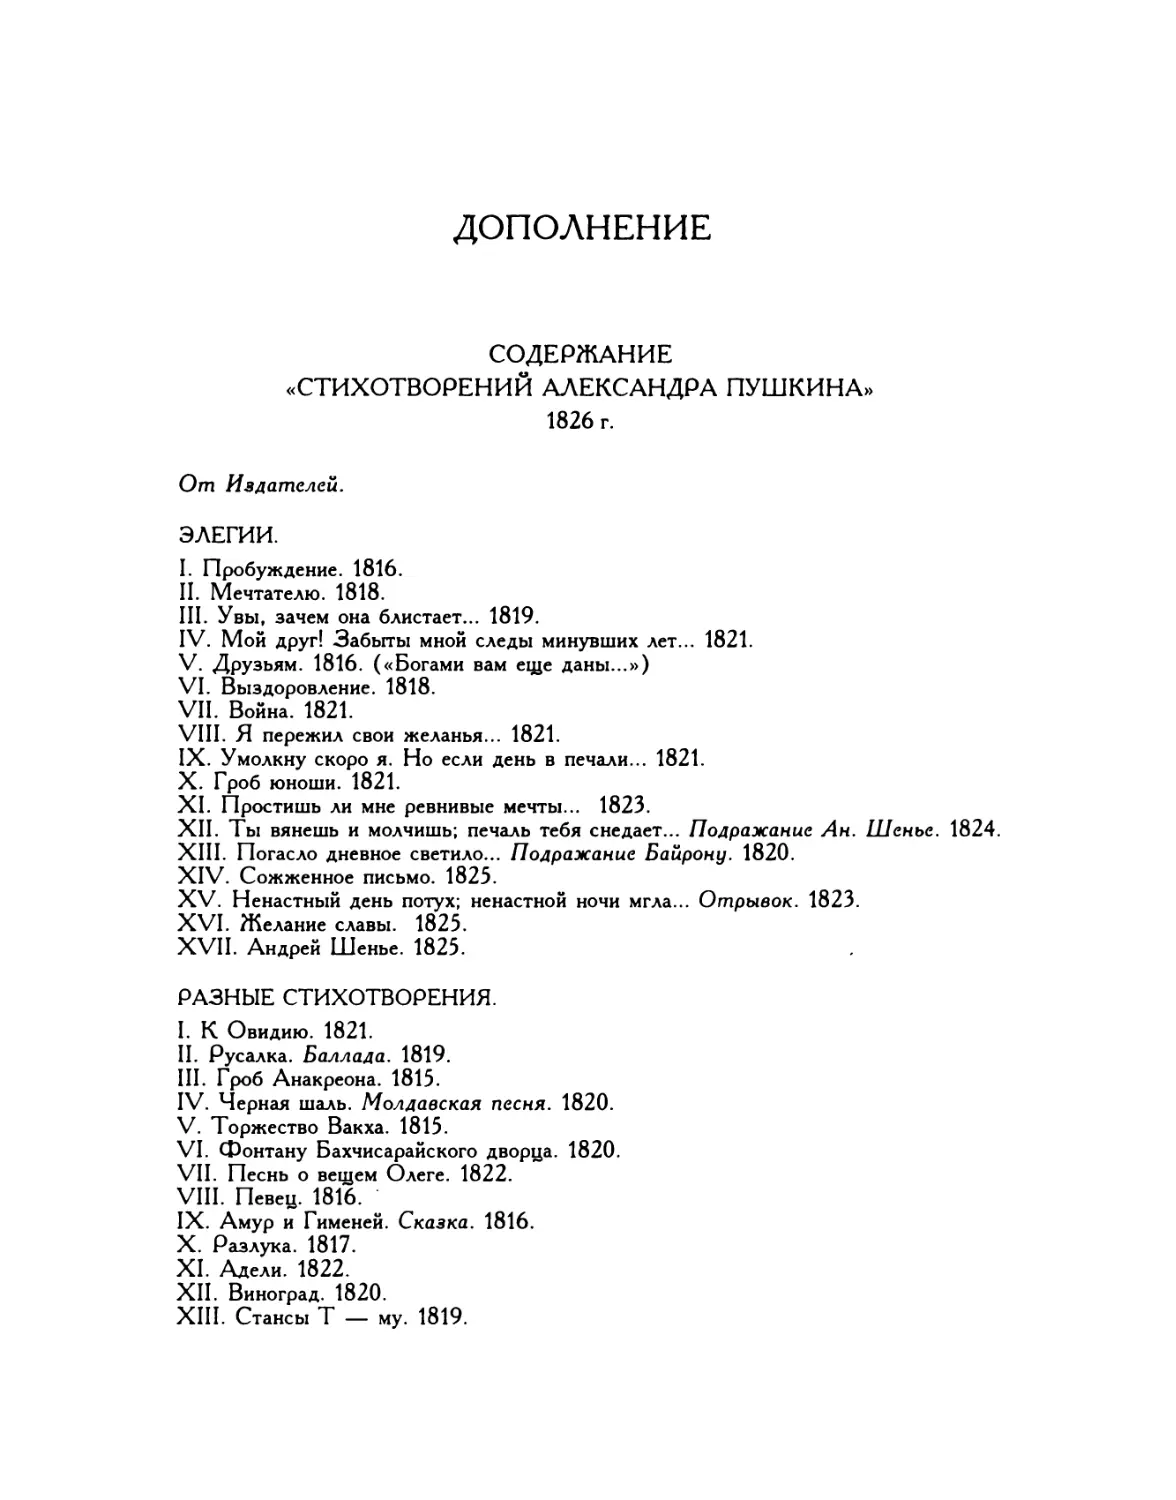 Дополнение: Содержание «Стихотворений Александра Пушкина» 1826 г.